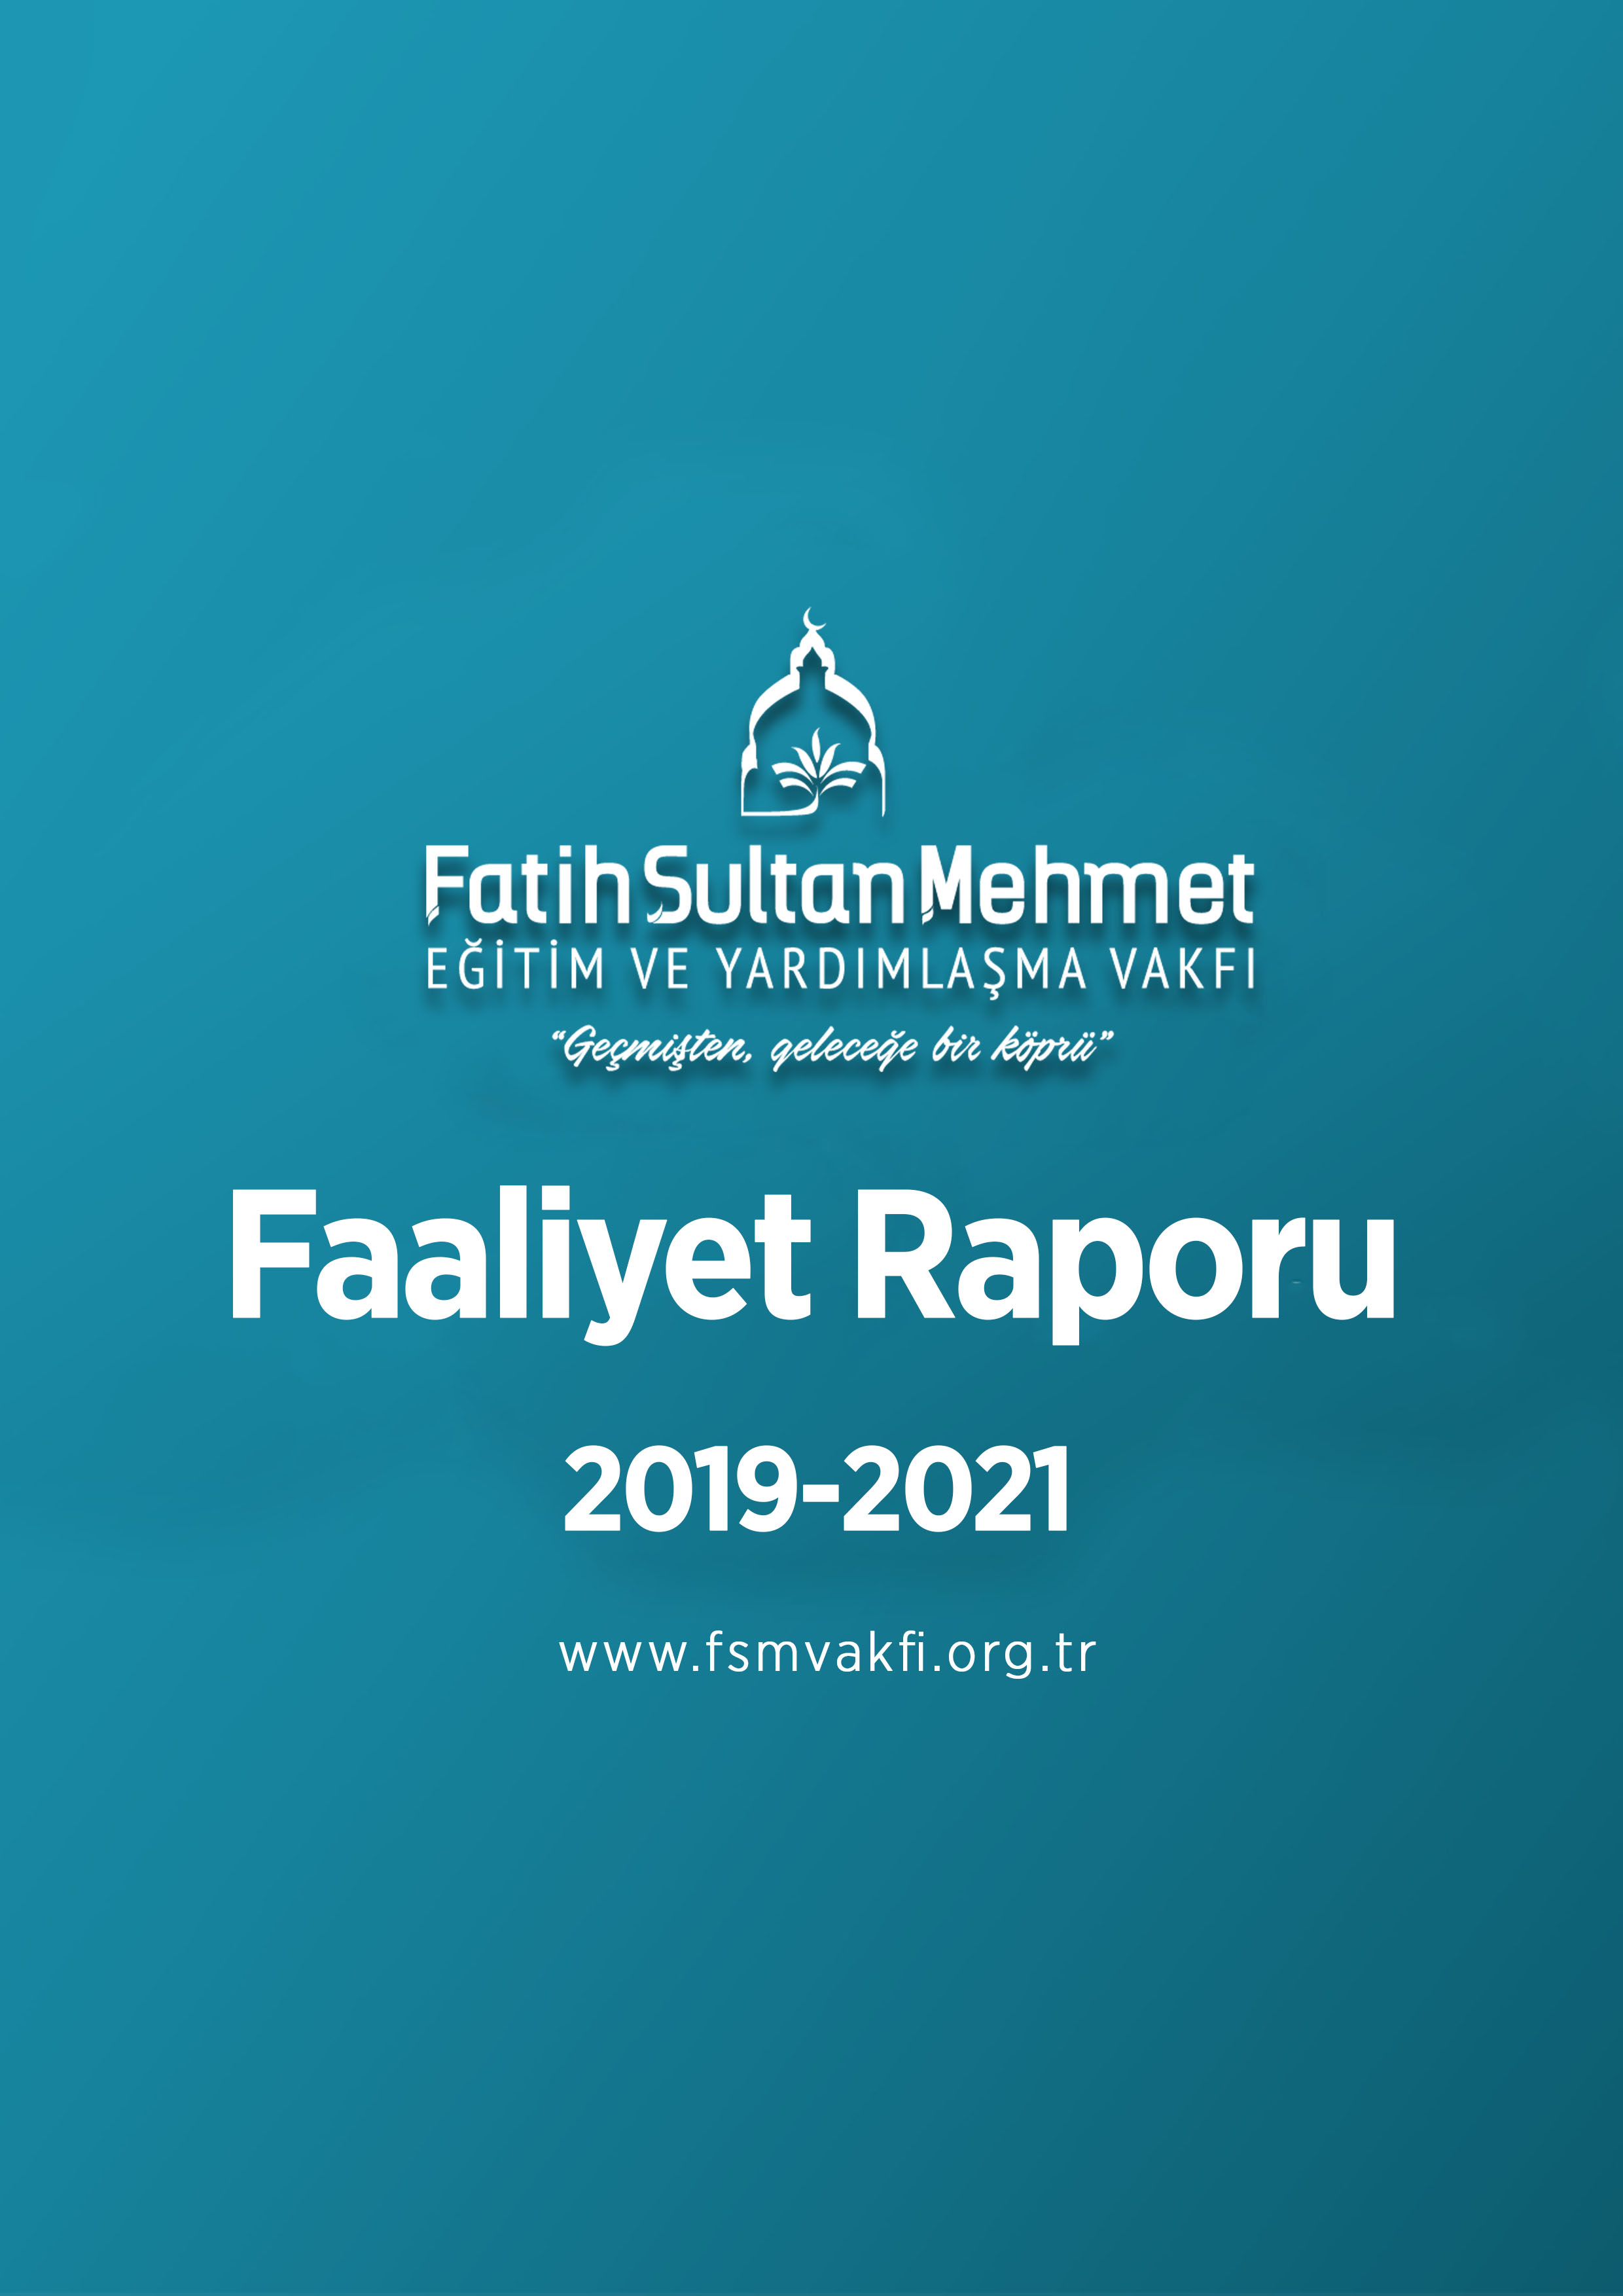 2019-2021 Faaliyet Raporu